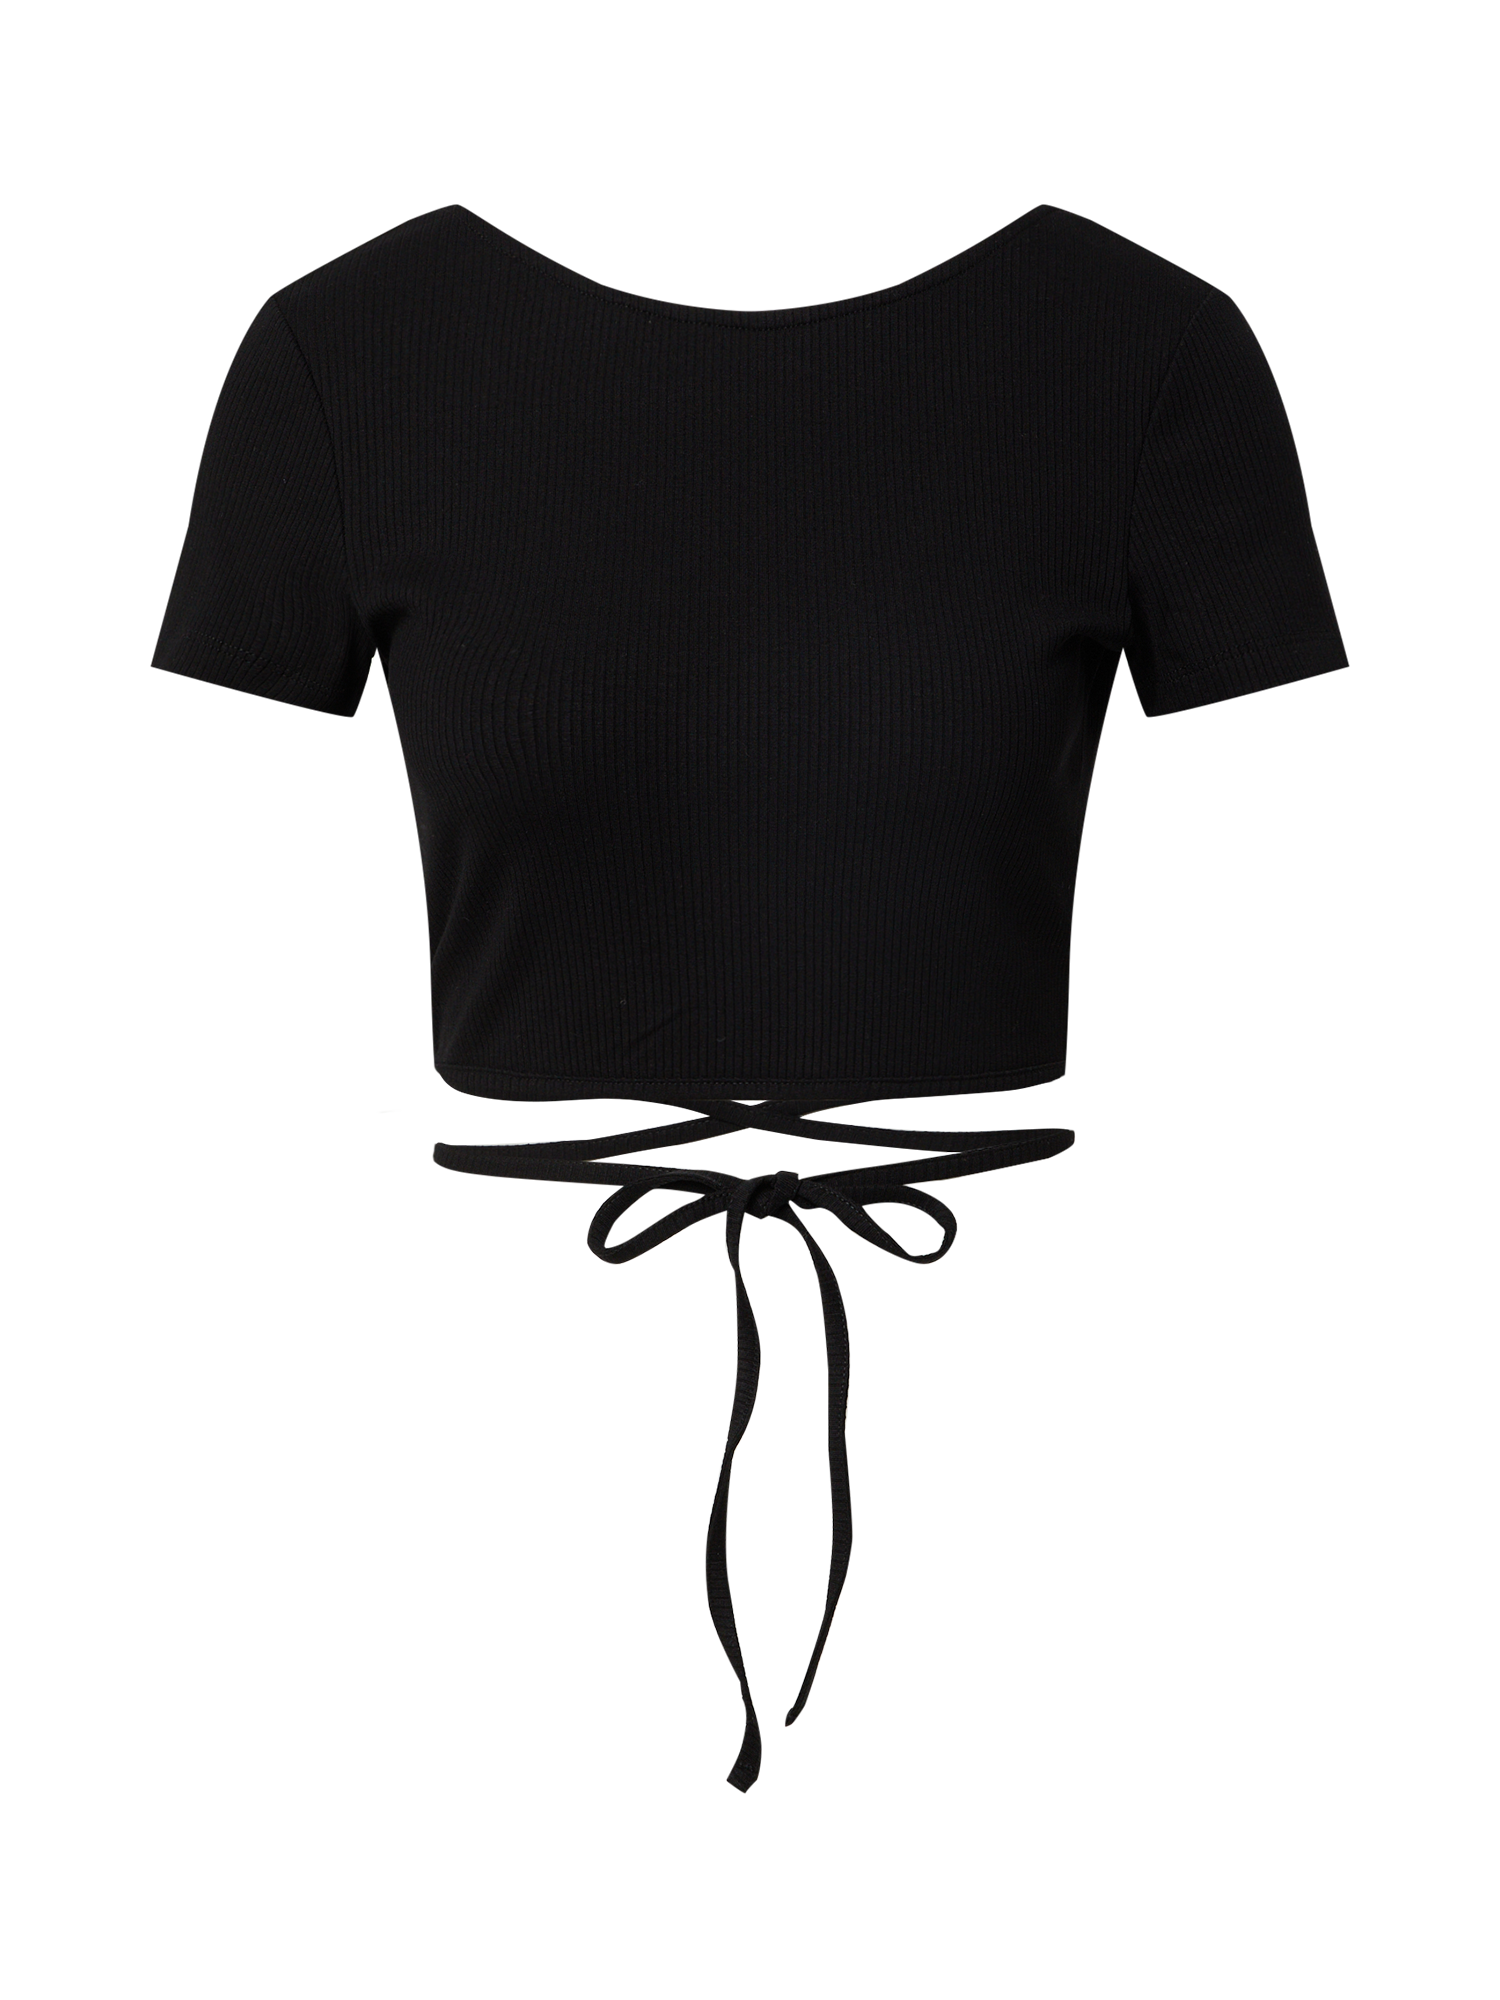 Odzież Koszulki & topy EDITED Koszulka River w kolorze Czarnym 